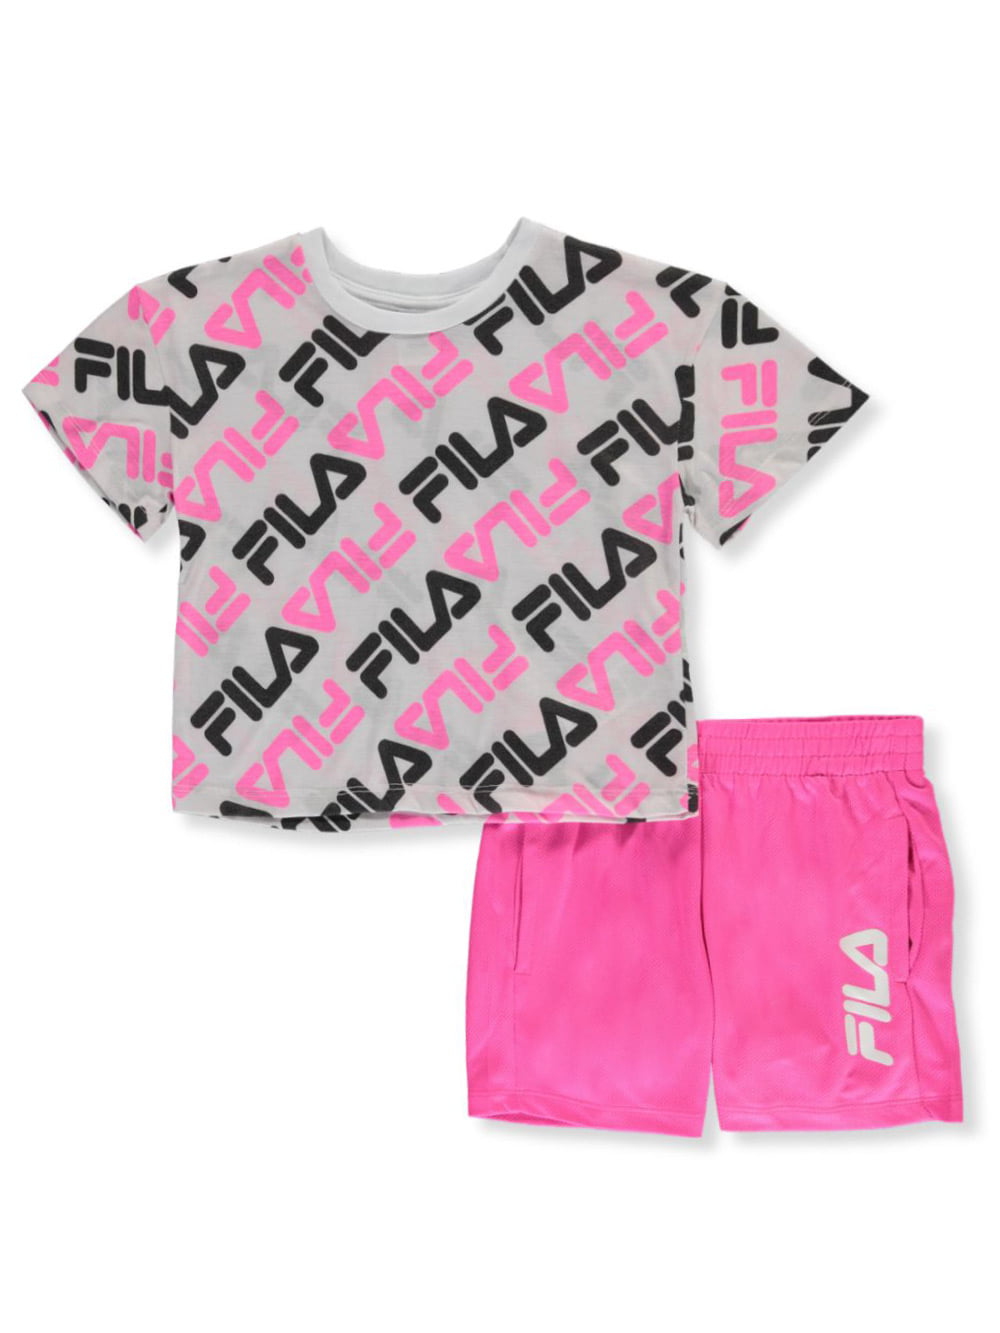 fila kid clothes